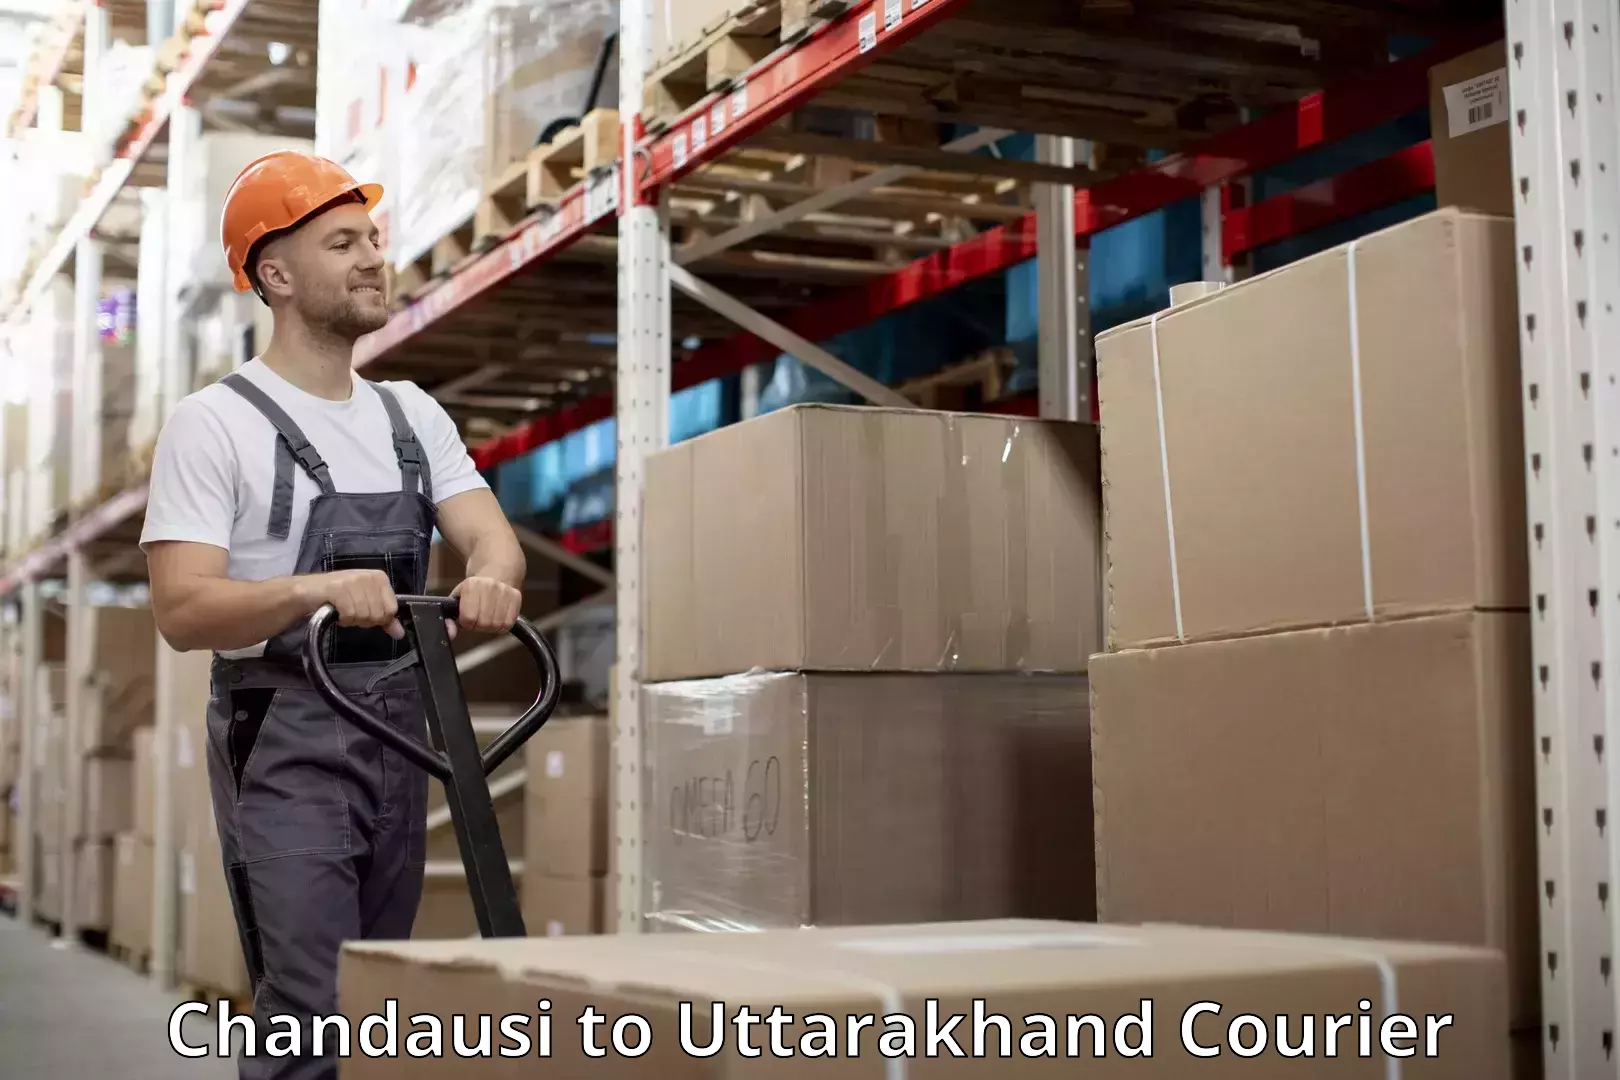 Luggage shipping service Chandausi to Uttarakhand